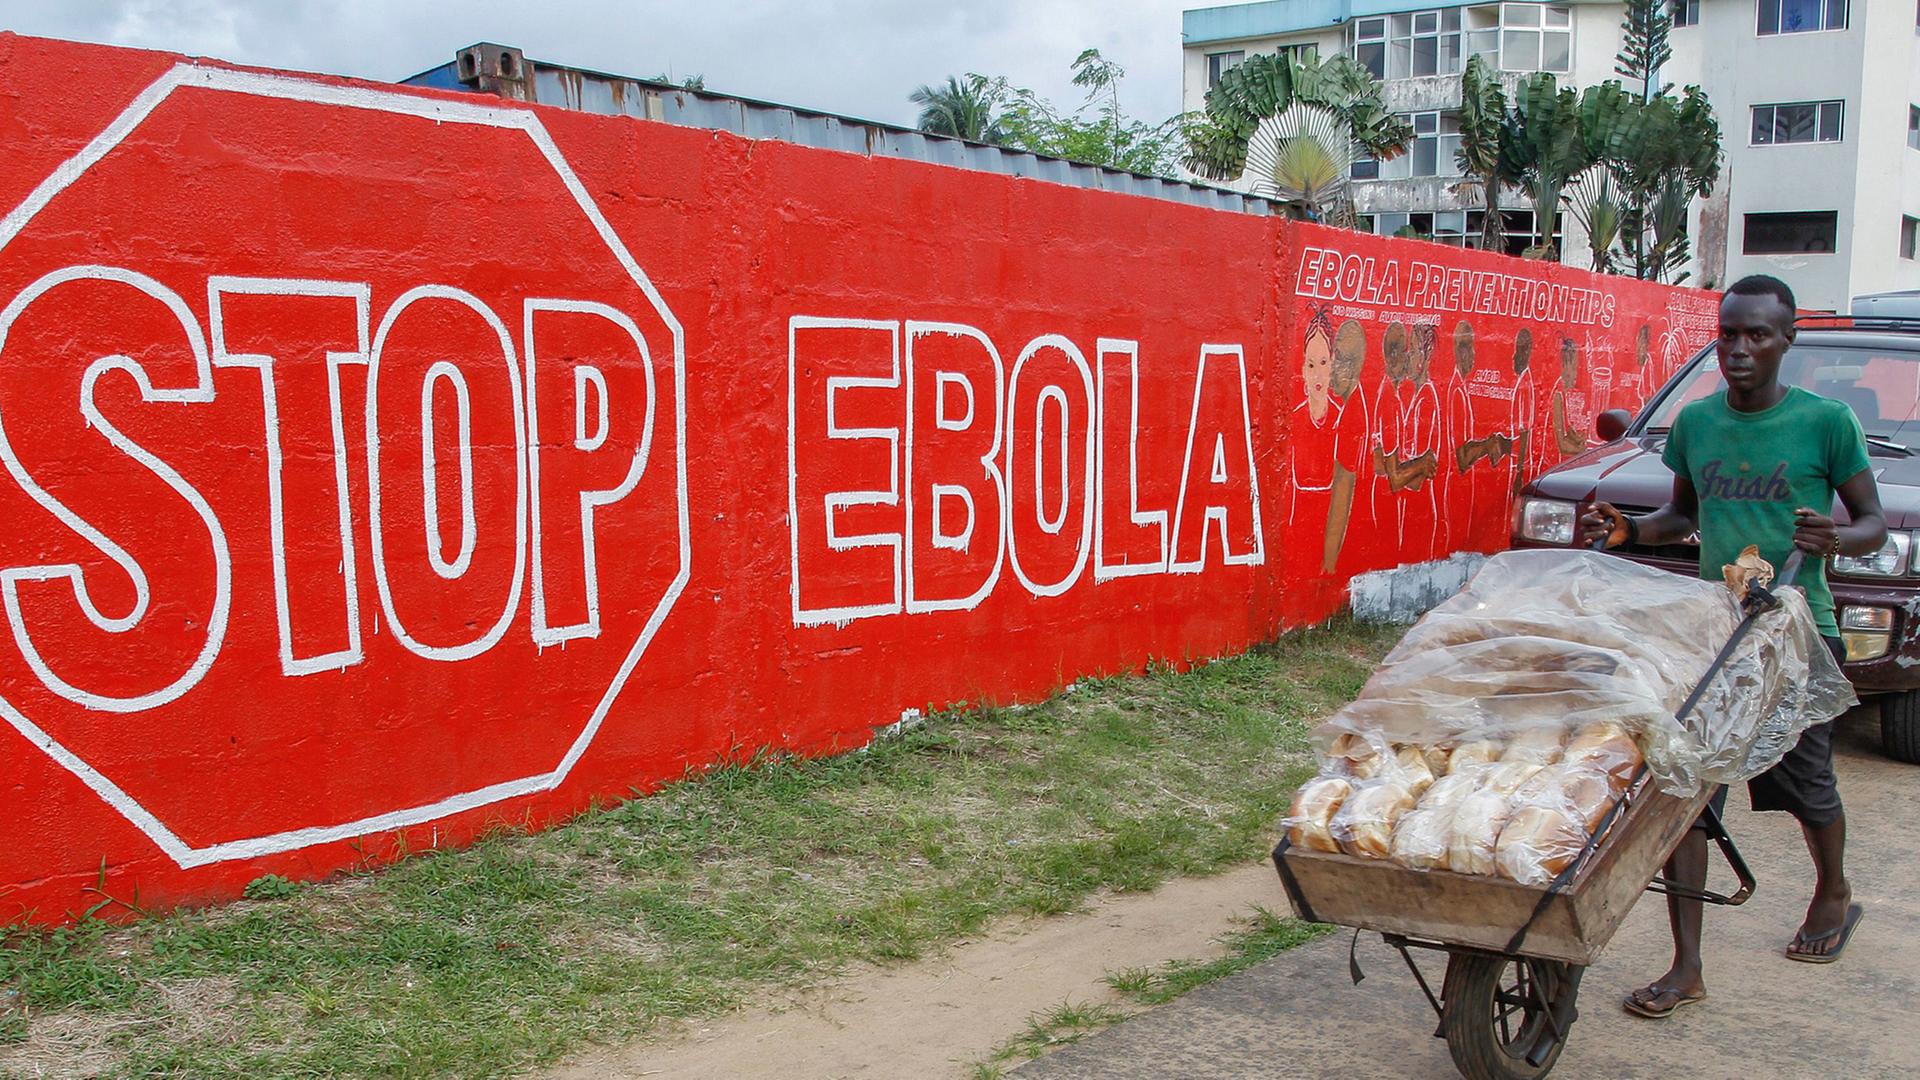 Ein Mann schiebt am 15. September 2014 in der liberianischen Hauptstadt Monrovia eine Karre mit Brot über eine Straße. Im Hintergrund hängt ein Schild mit der Aufschrift Stop Ebola.